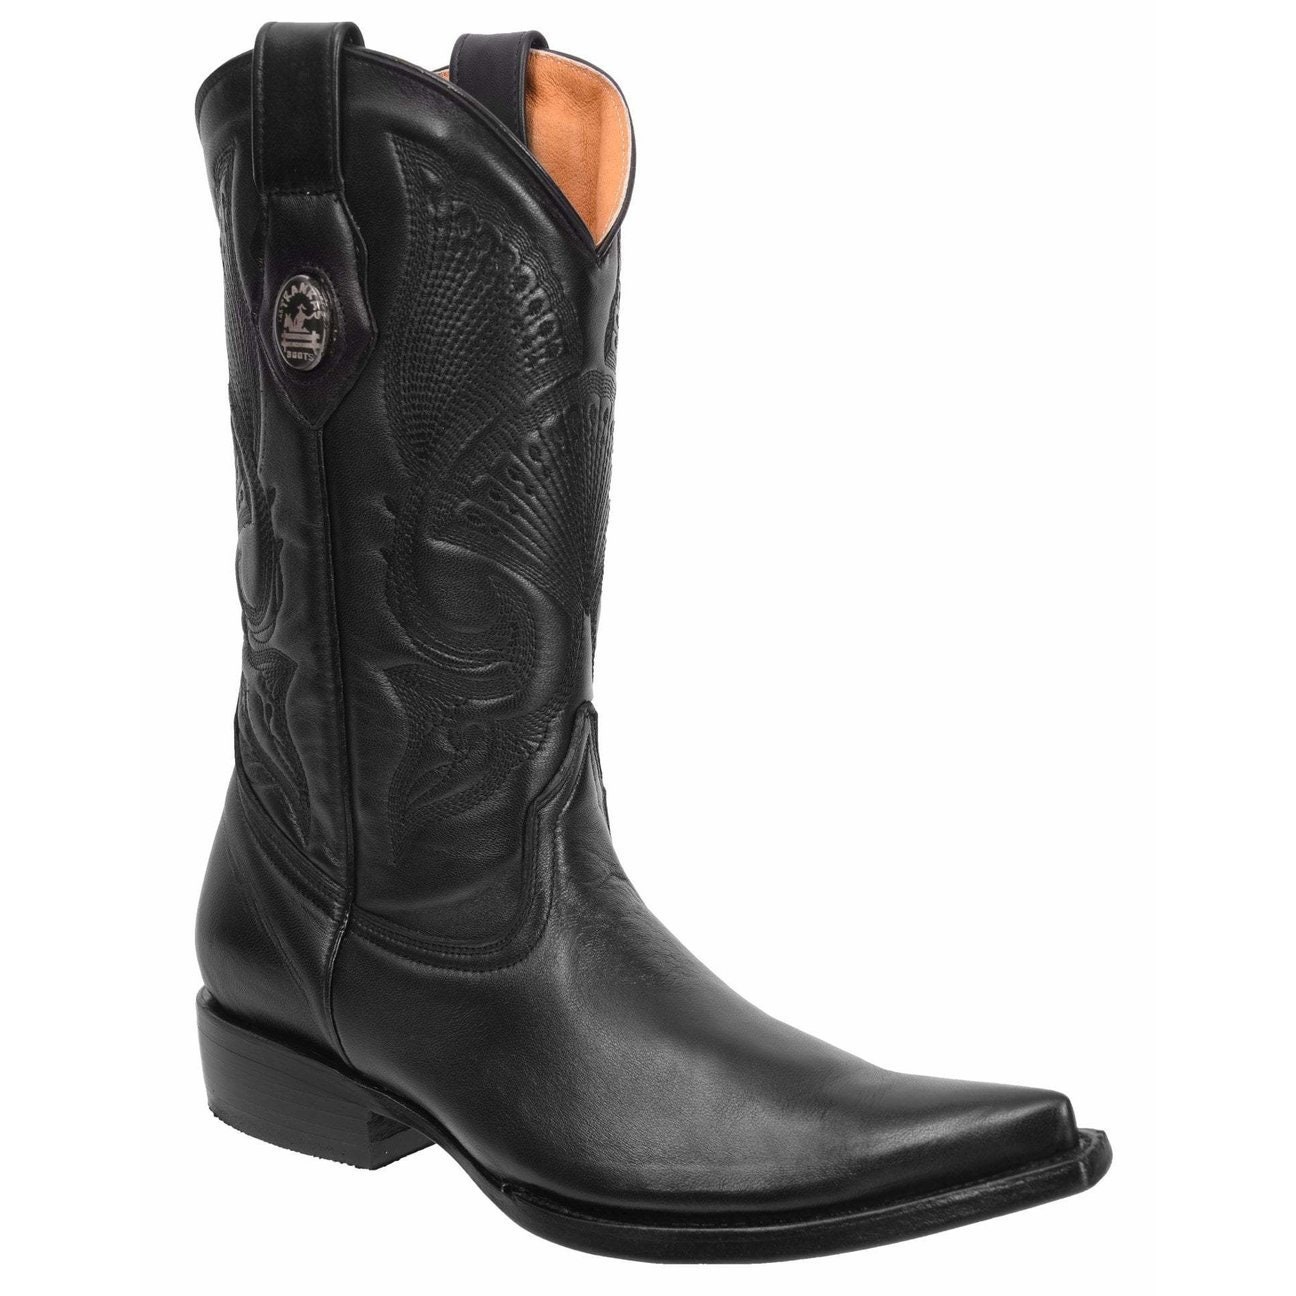 Men's Western Boots dear Leather/botas Vaqueras De Hombre piel De Venado -   Canada